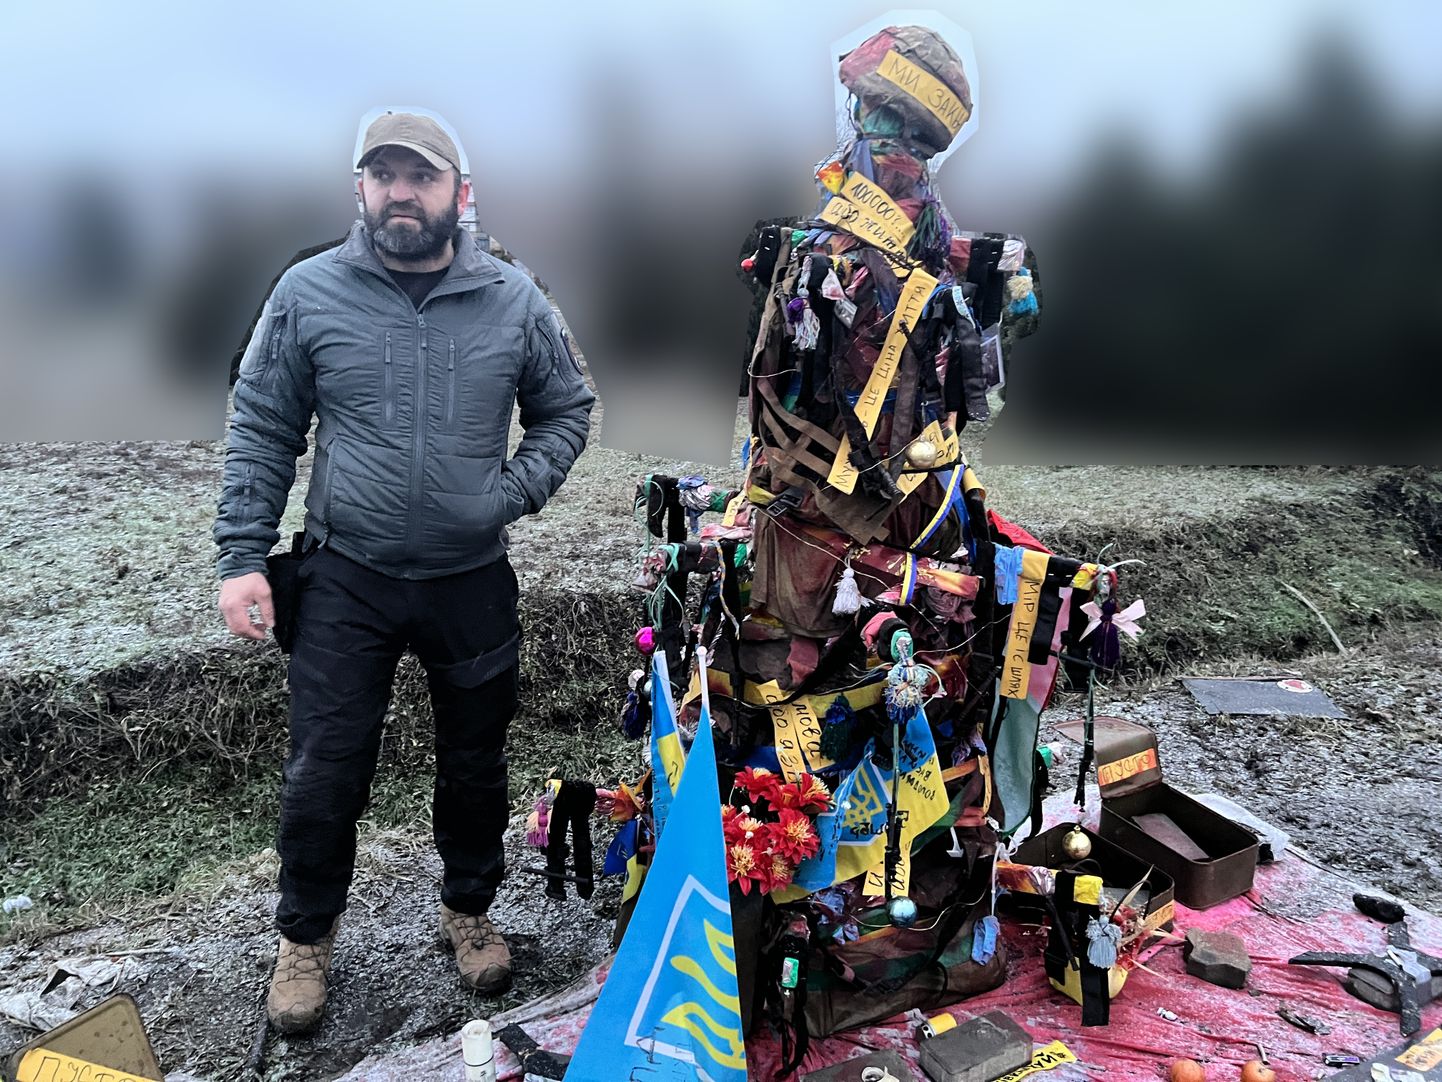 Võõrleegioni stabilisatsioonipunktis töötav Sergo oma installatsiooni ees ühes Ukraina rindelinnas, mis jääb silma kõigile sellest möödasõitjatele.